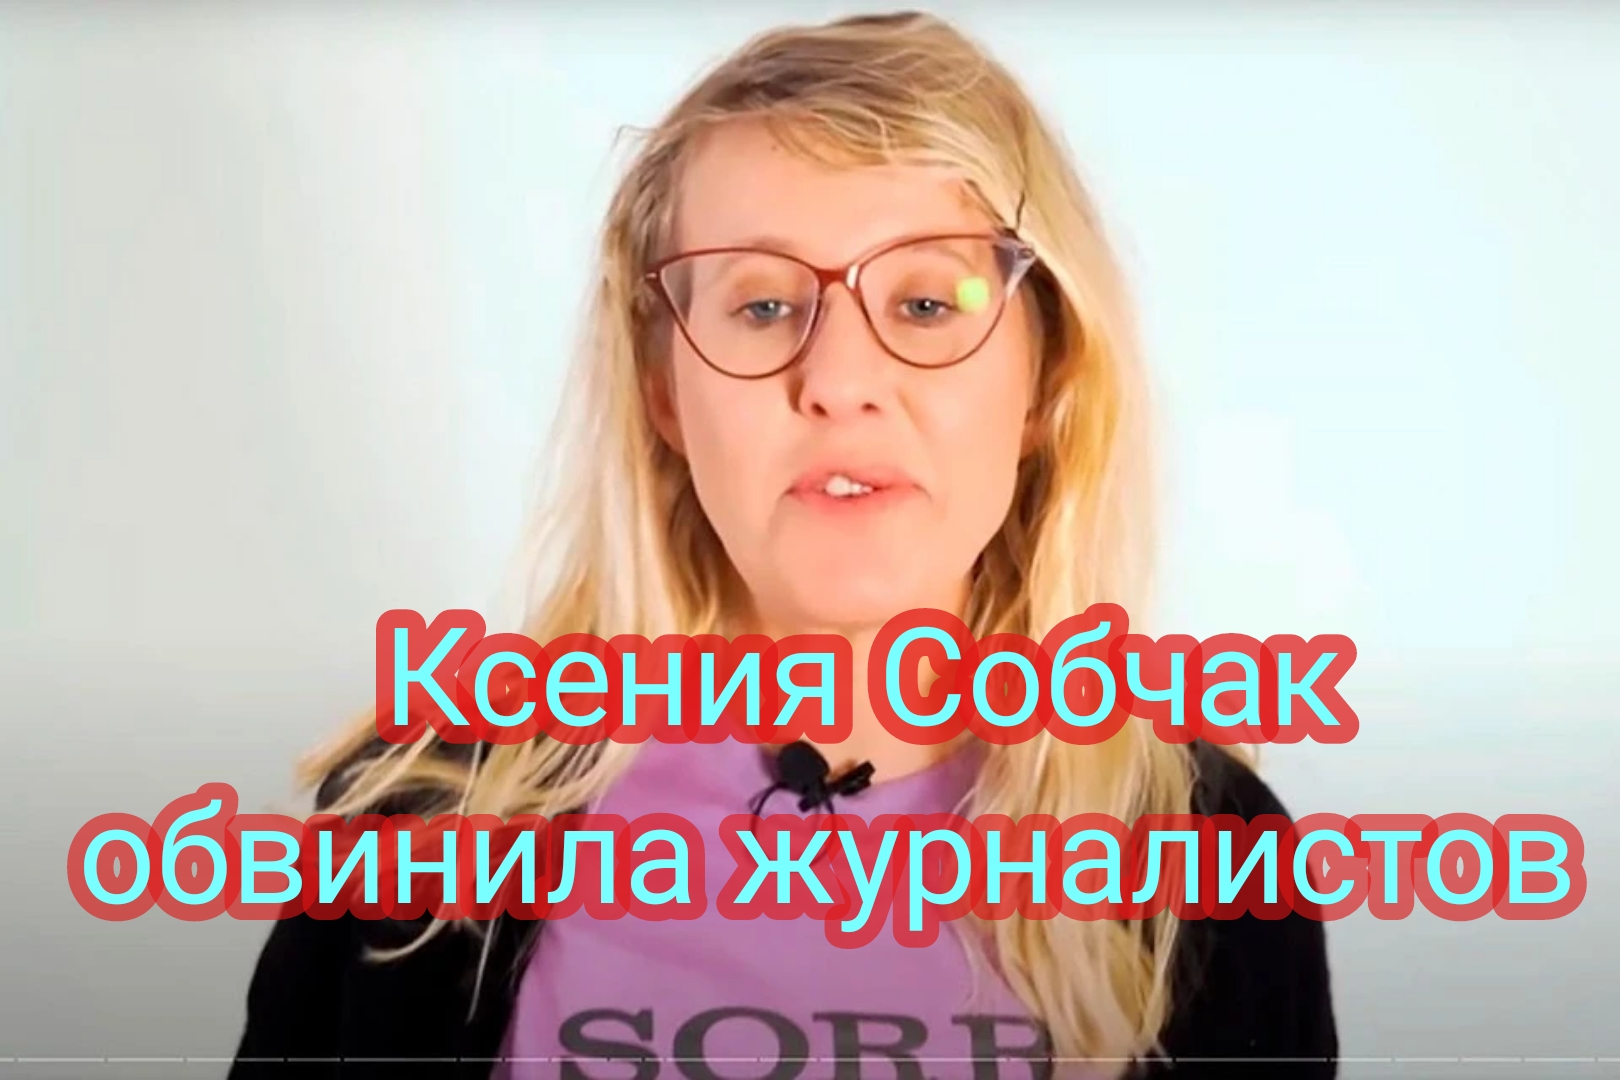 Ксения Собчак обвинила журналистов